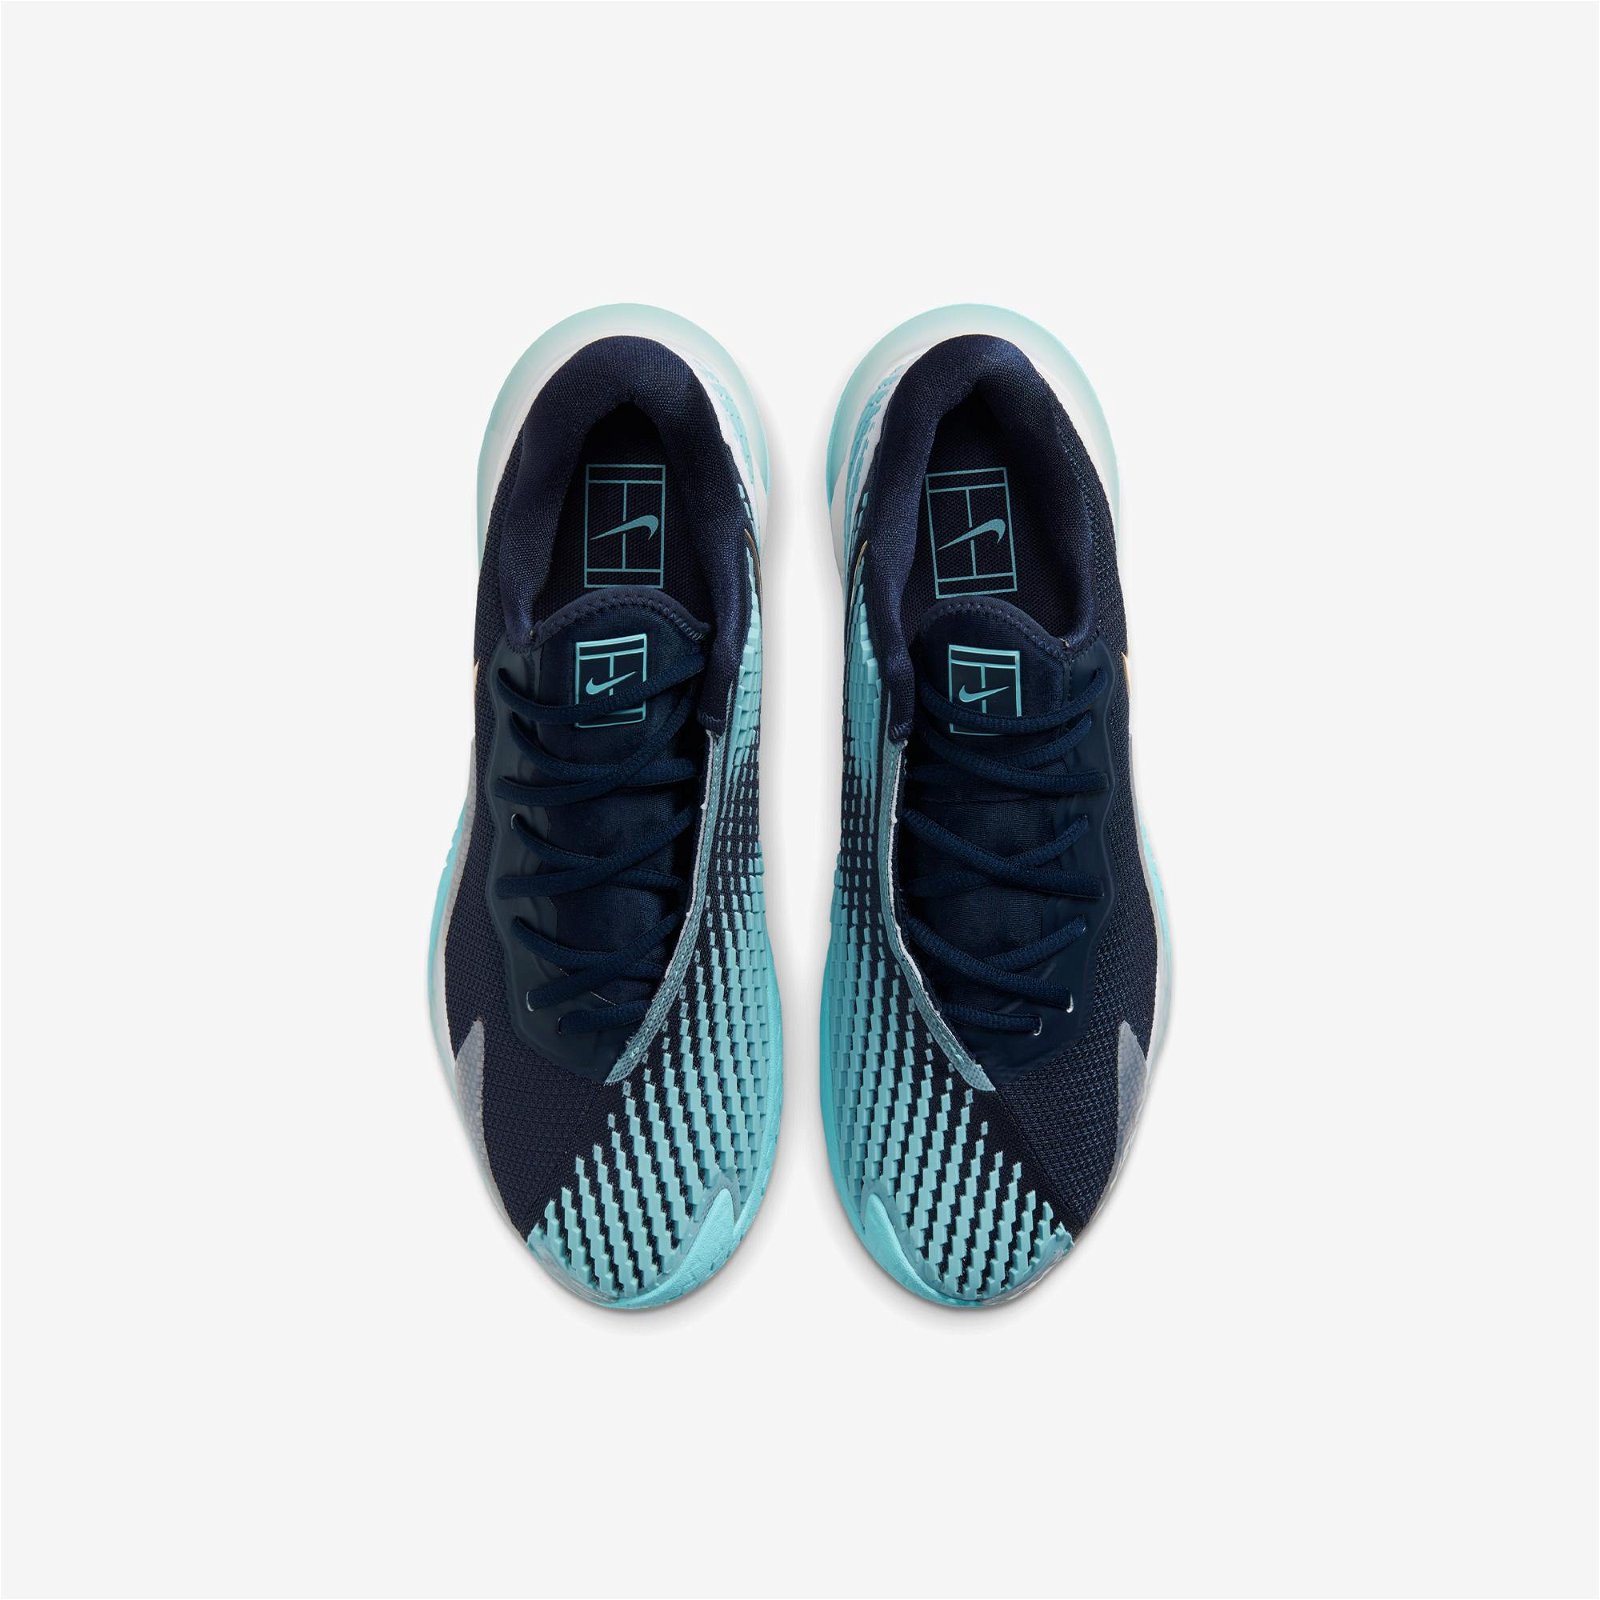 Nike Air Zoom Vapor Cage 4 Hc Erkek Mavi Spor Ayakkabı